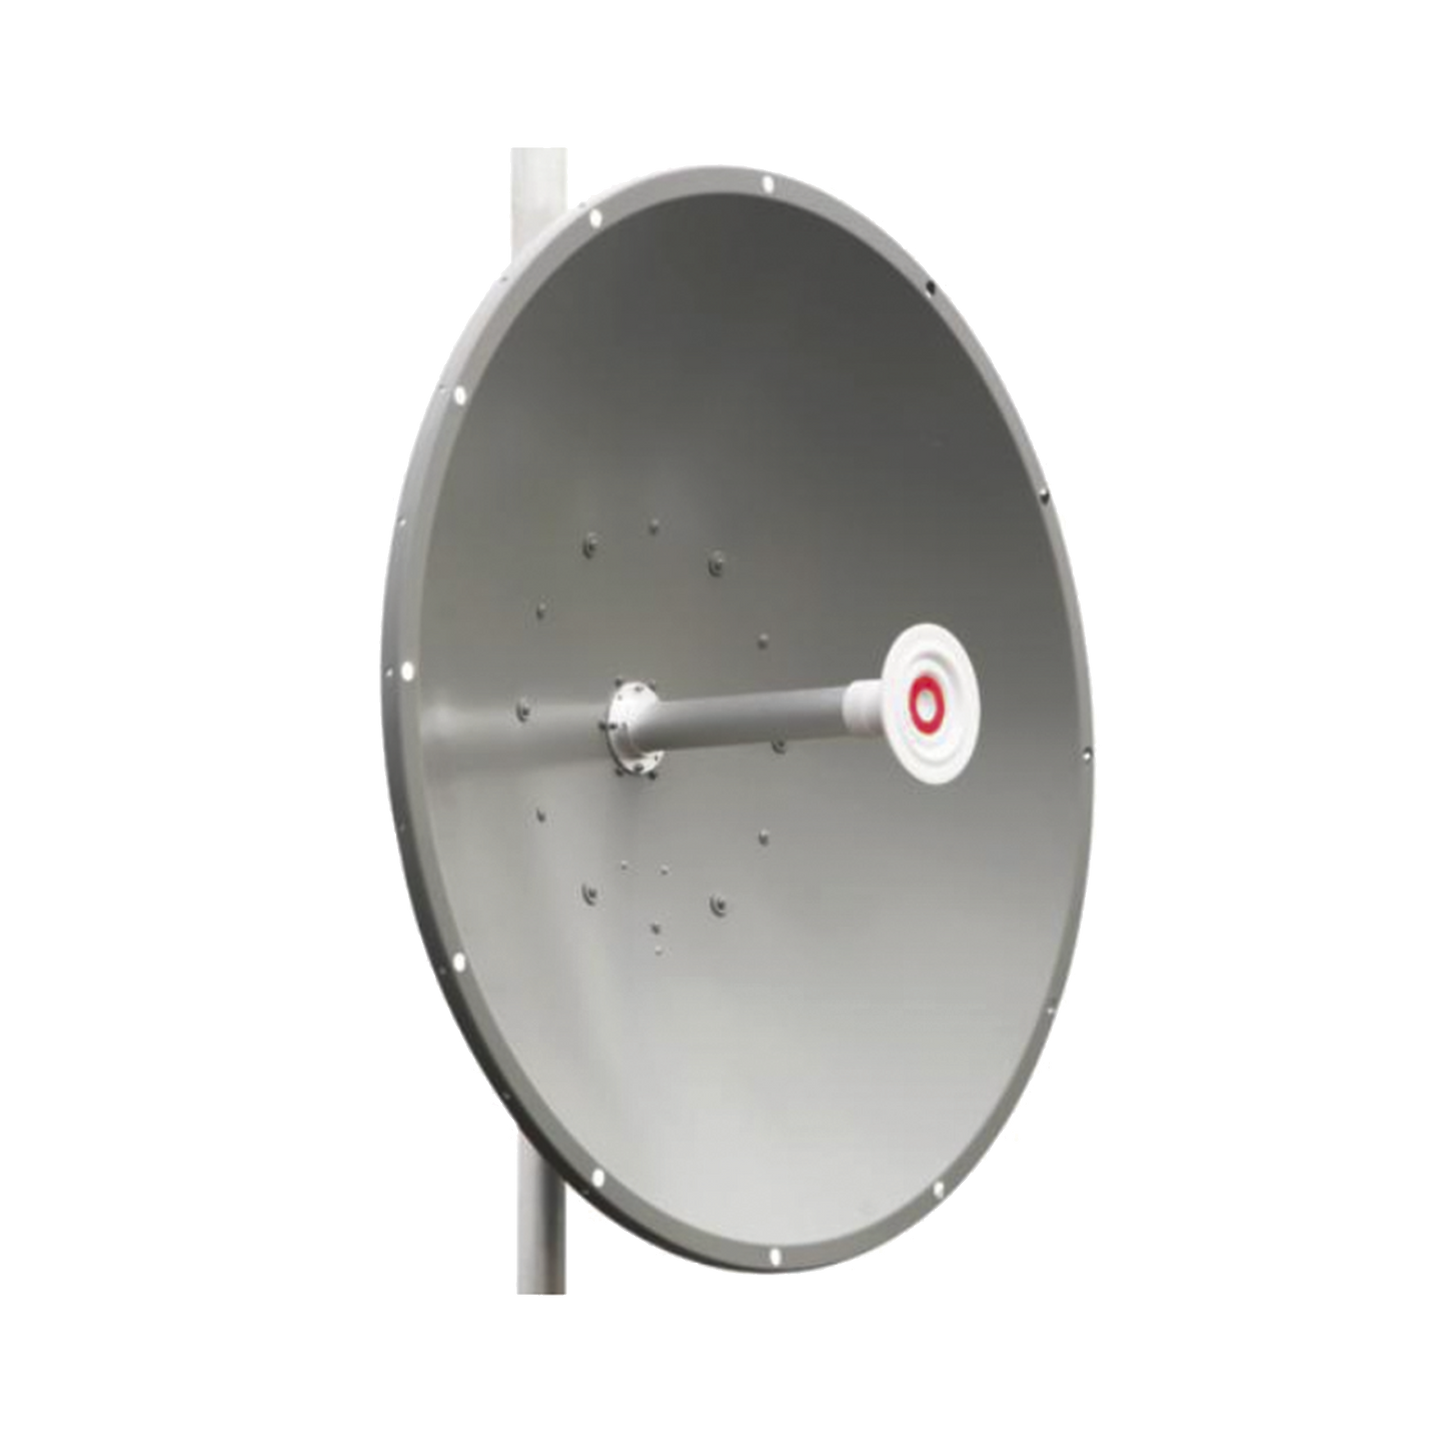 Antena direccional de 3 ft, 5.1 a 7.1 GHz, Ganancia 34 dBi, Conectores RP-SMA Hembra, Polarización doble, incluye montaje para torre o mástil